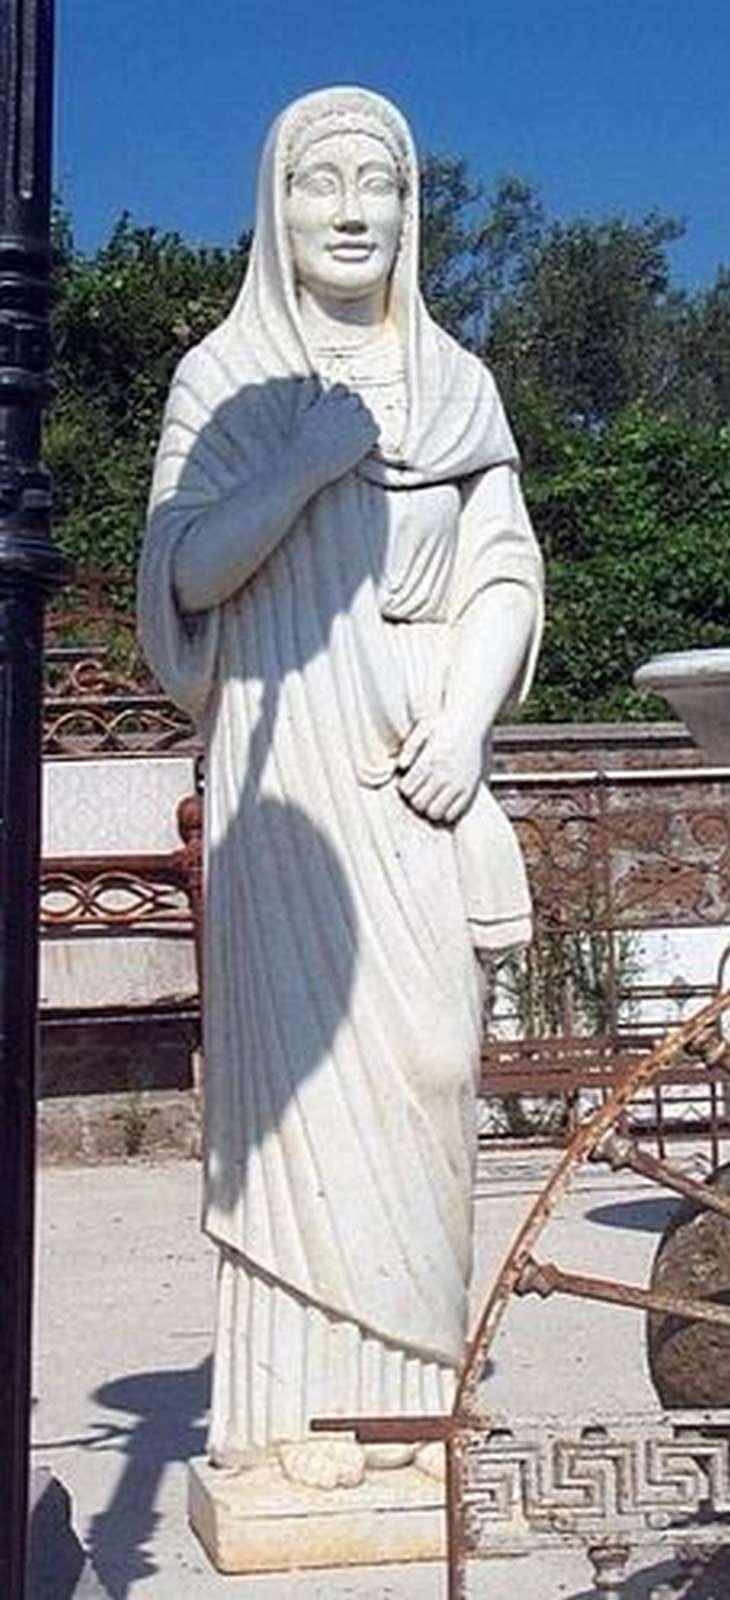 Antica statua in marmo. Epoca 1800. - Statue Antiche - Sculture Antiche - Prodotti - Antichità Fiorillo